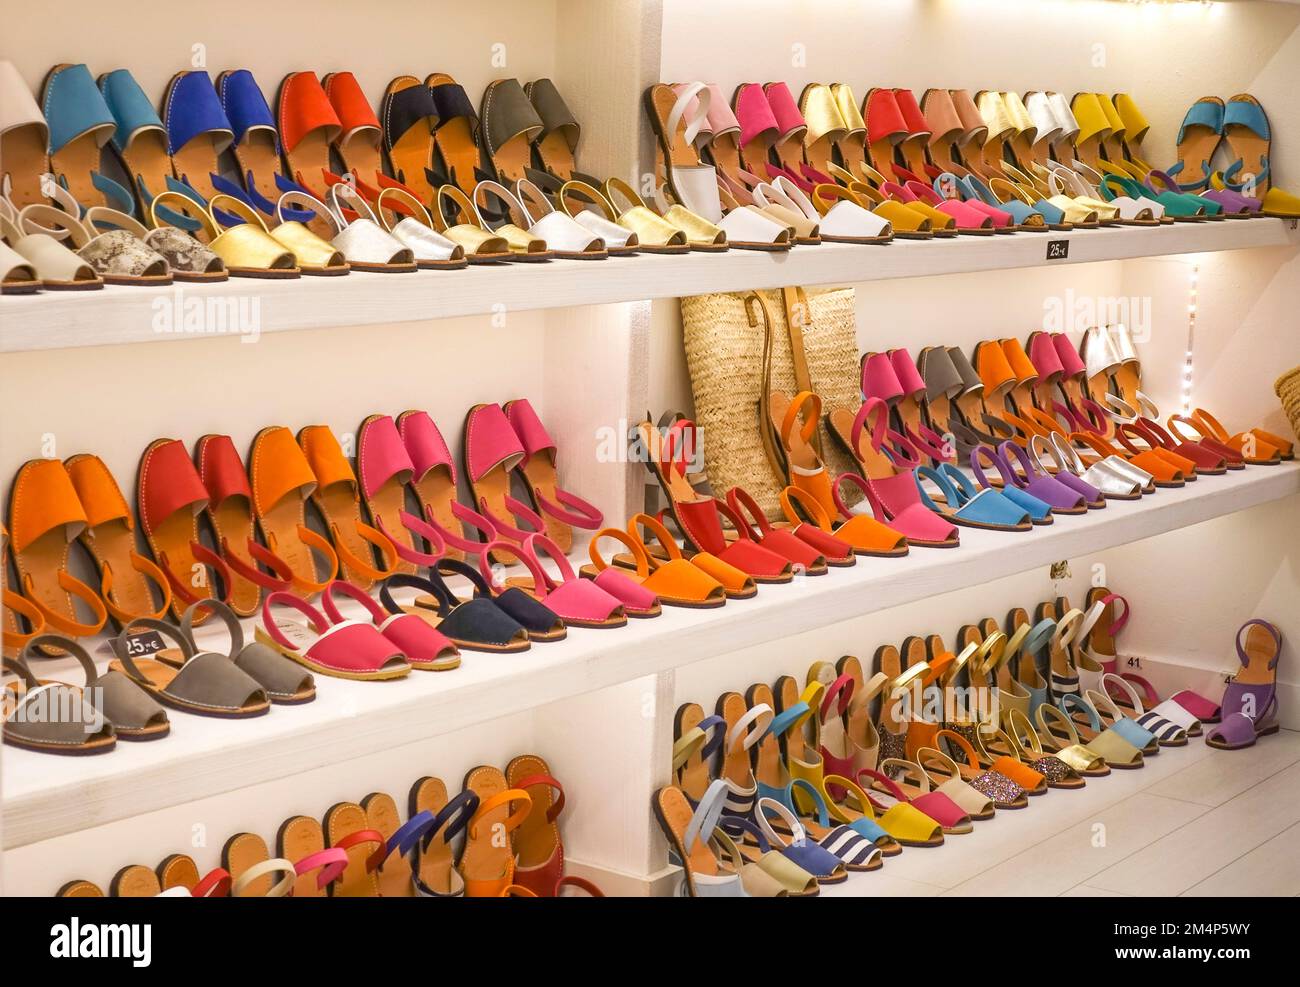 Chaussures typiques, avarques, Esprilles, sur présentation d'un magasin de chaussures à Ciutadella. Minorque. Îles Baléares. Espagne Banque D'Images